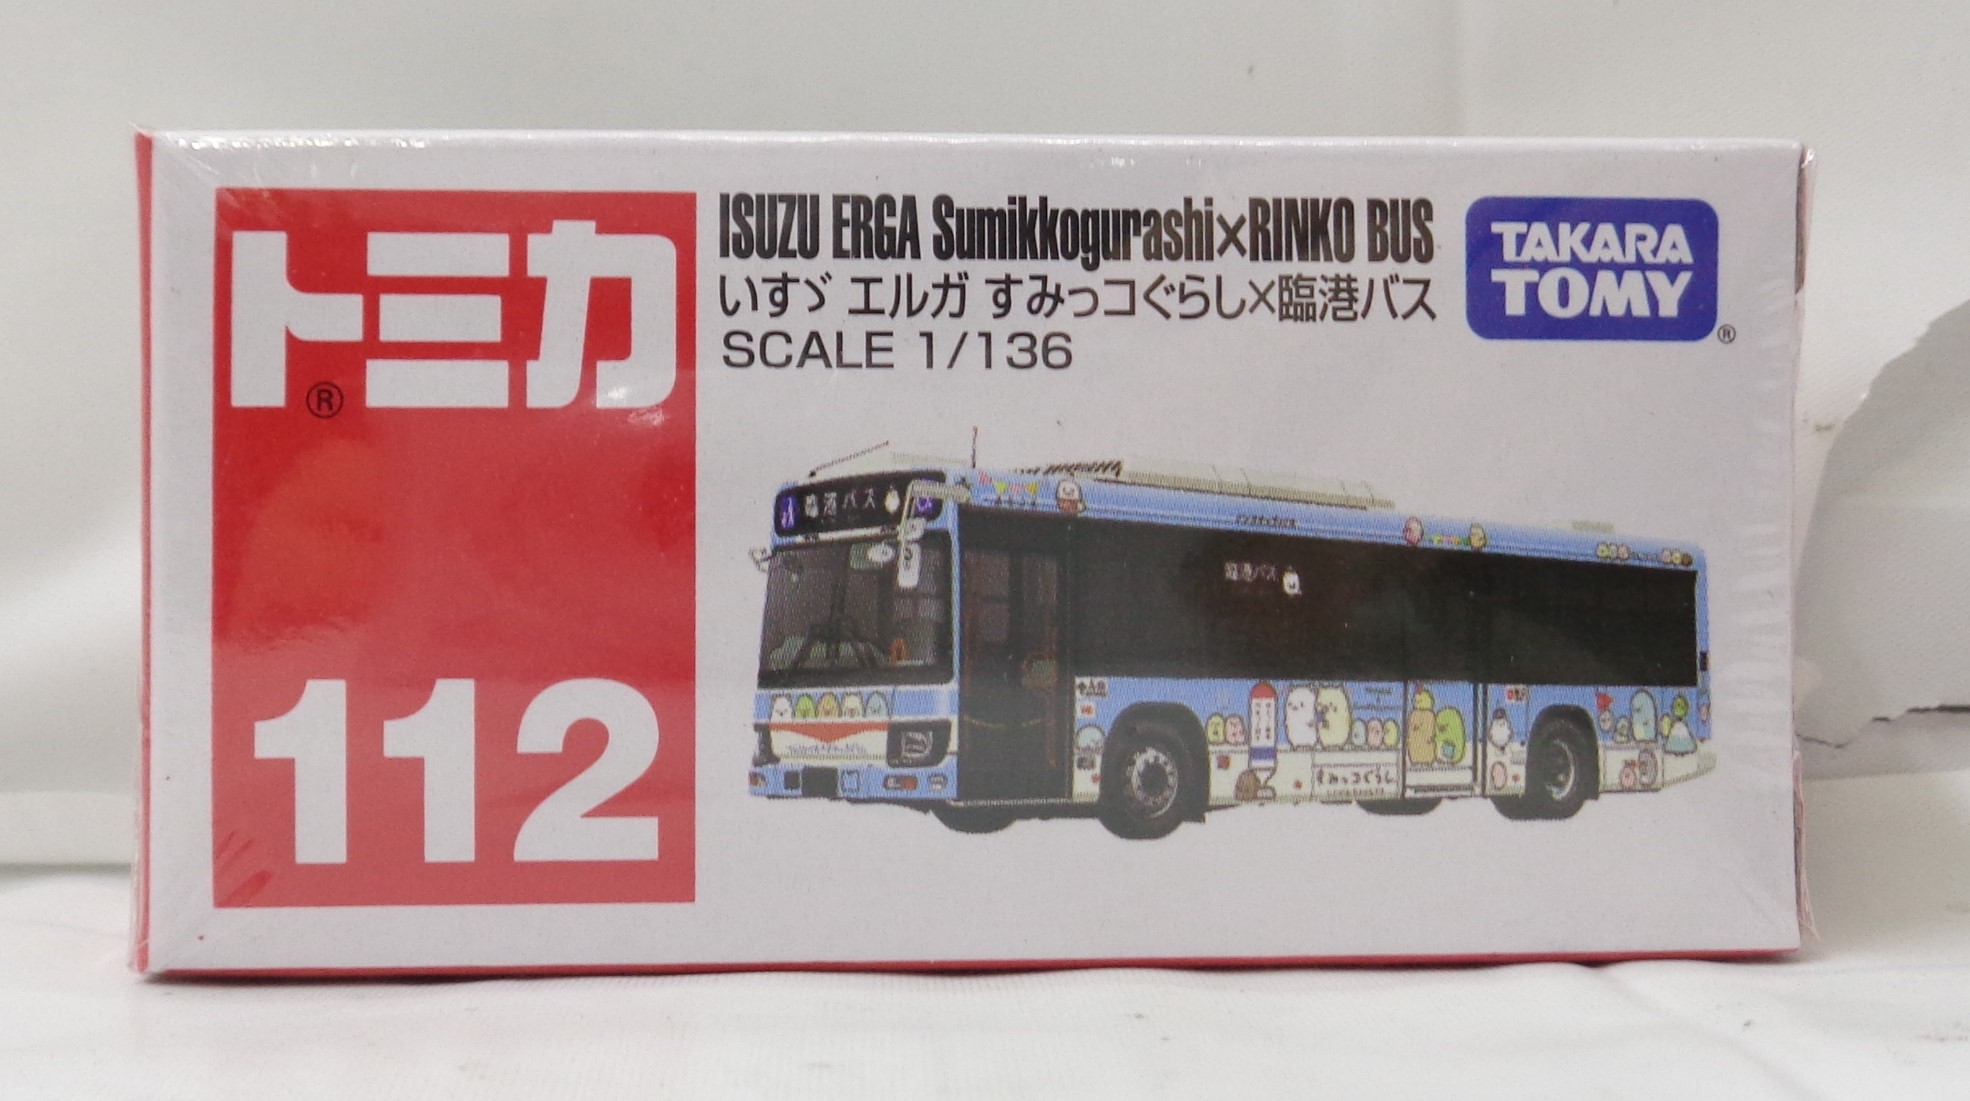 タカラトミー トミカ No.112 いすゞ エルガ すみっコぐらし × 臨港バス (箱)